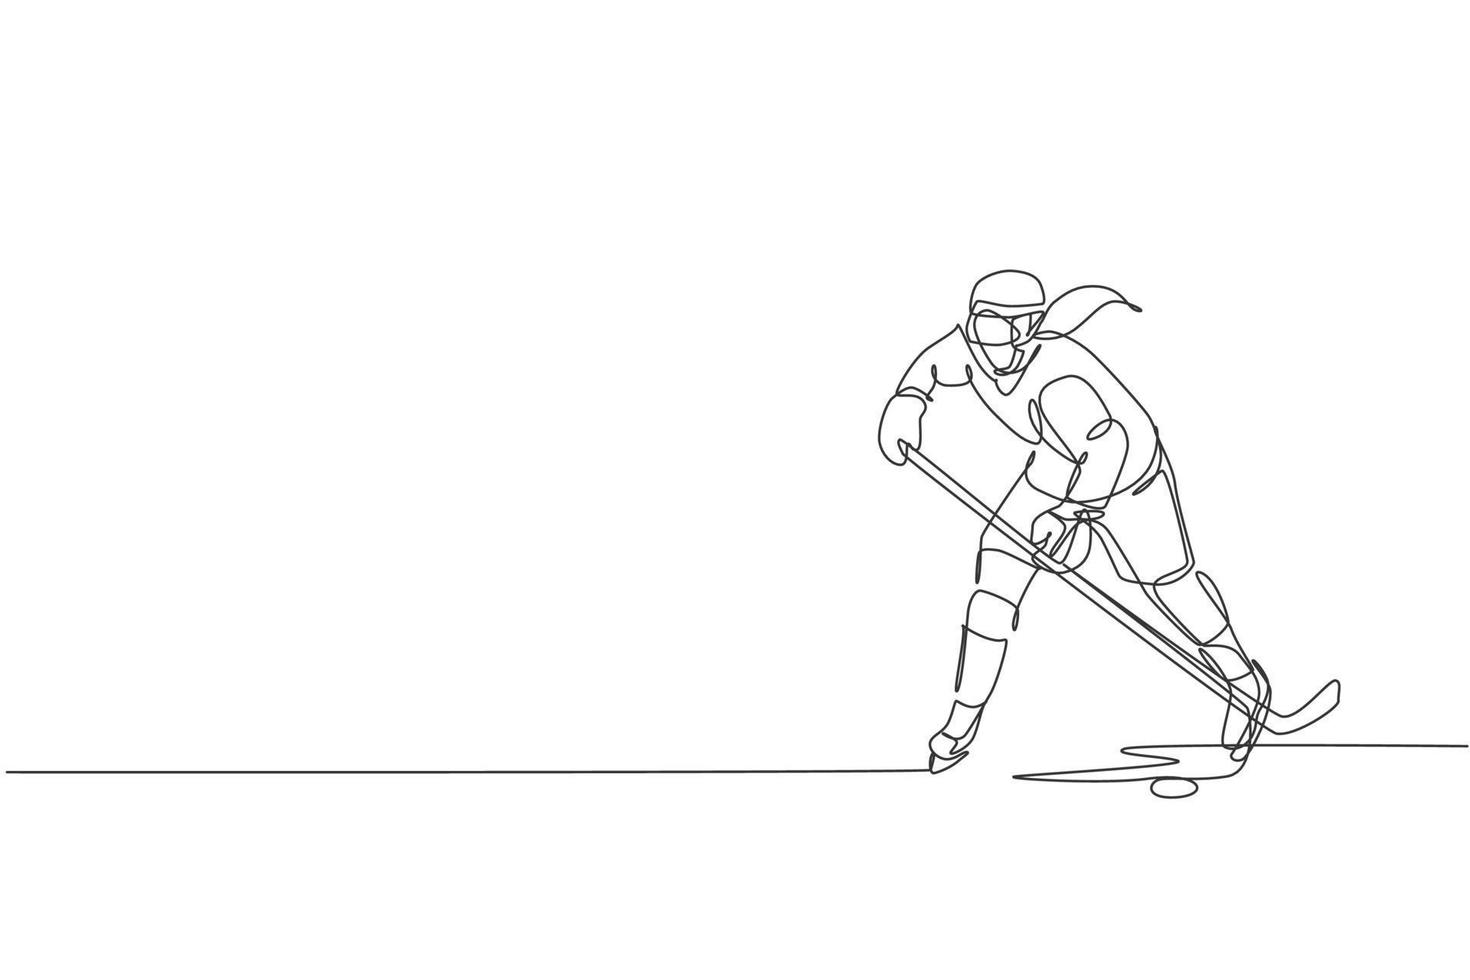 um único desenho de linha do jovem jogador de hóquei no gelo em ação para jogar um jogo competitivo no gráfico de ilustração vetorial do estádio de pista de gelo. conceito de torneio esportivo. design moderno de desenho de linha contínua vetor